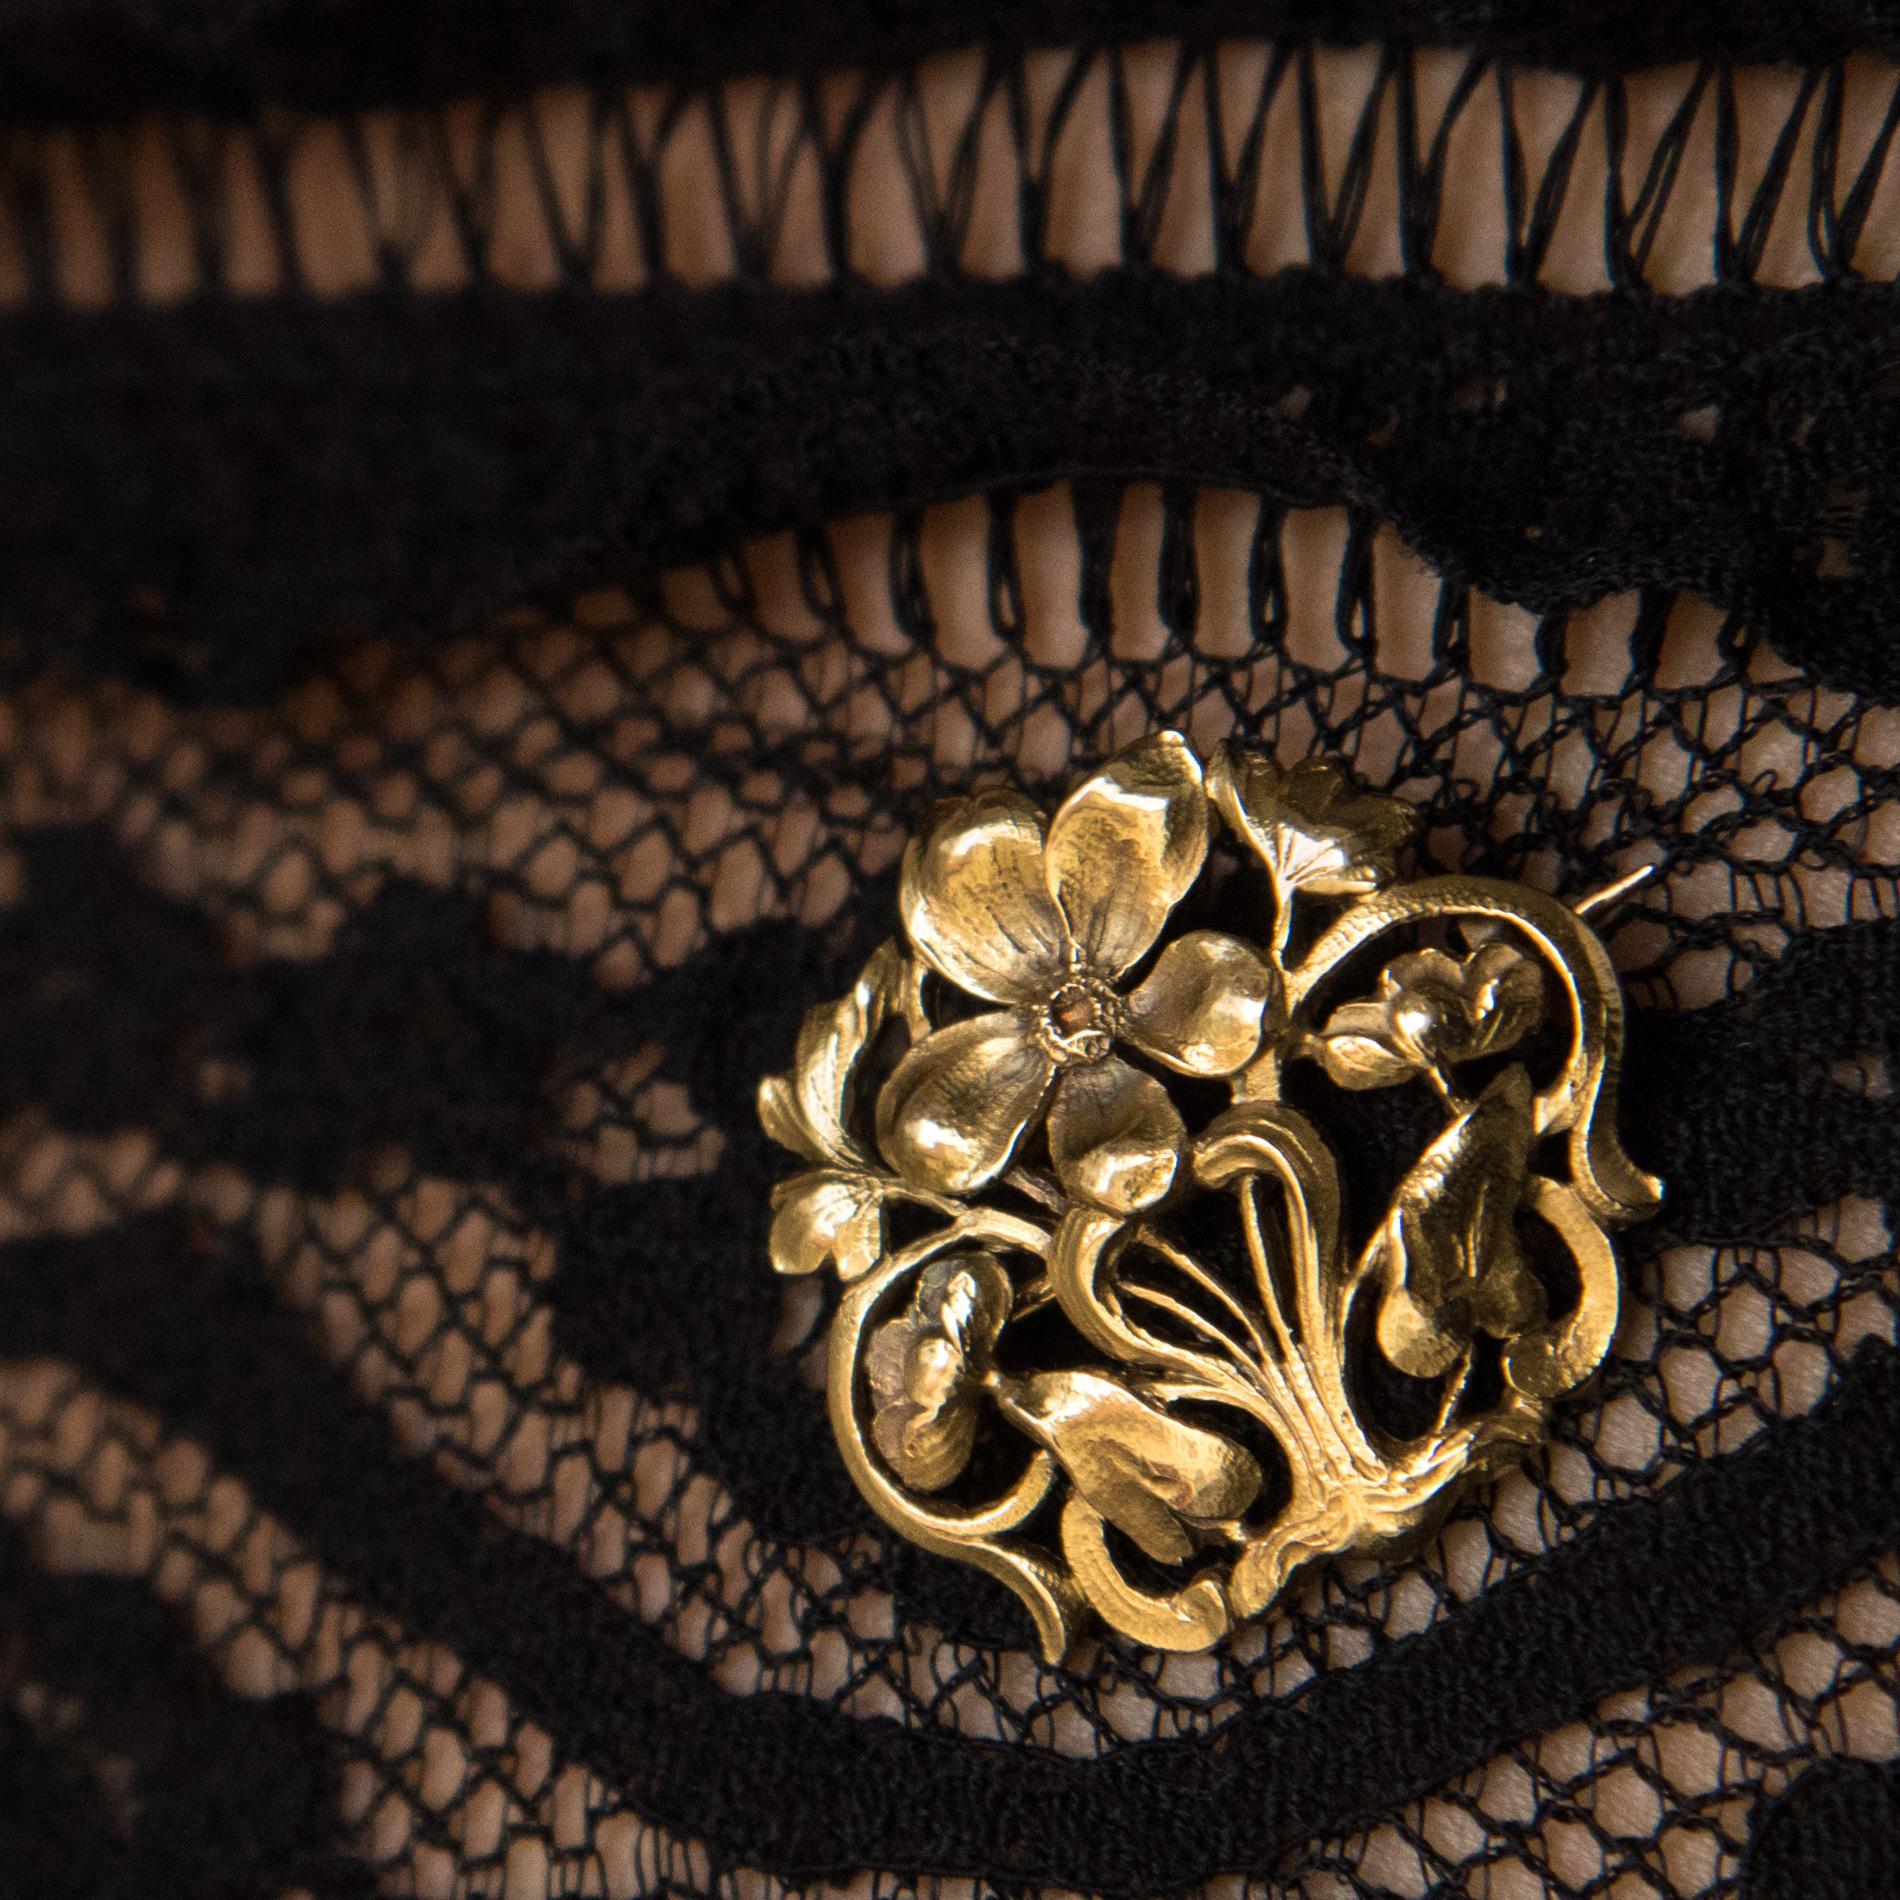 Brosche aus 18 Karat Gelbgold, Adlerkopfpunze.
Dieses schöne antike Schmuckstück stellt einen Korb mit Blumen dar, der fein ziseliert und durchbrochen ist. Der Verschluss ist eine Nadel mit Sicherheitshaken.
Höhe: 2,5 cm, breiteste Stelle: 2,6